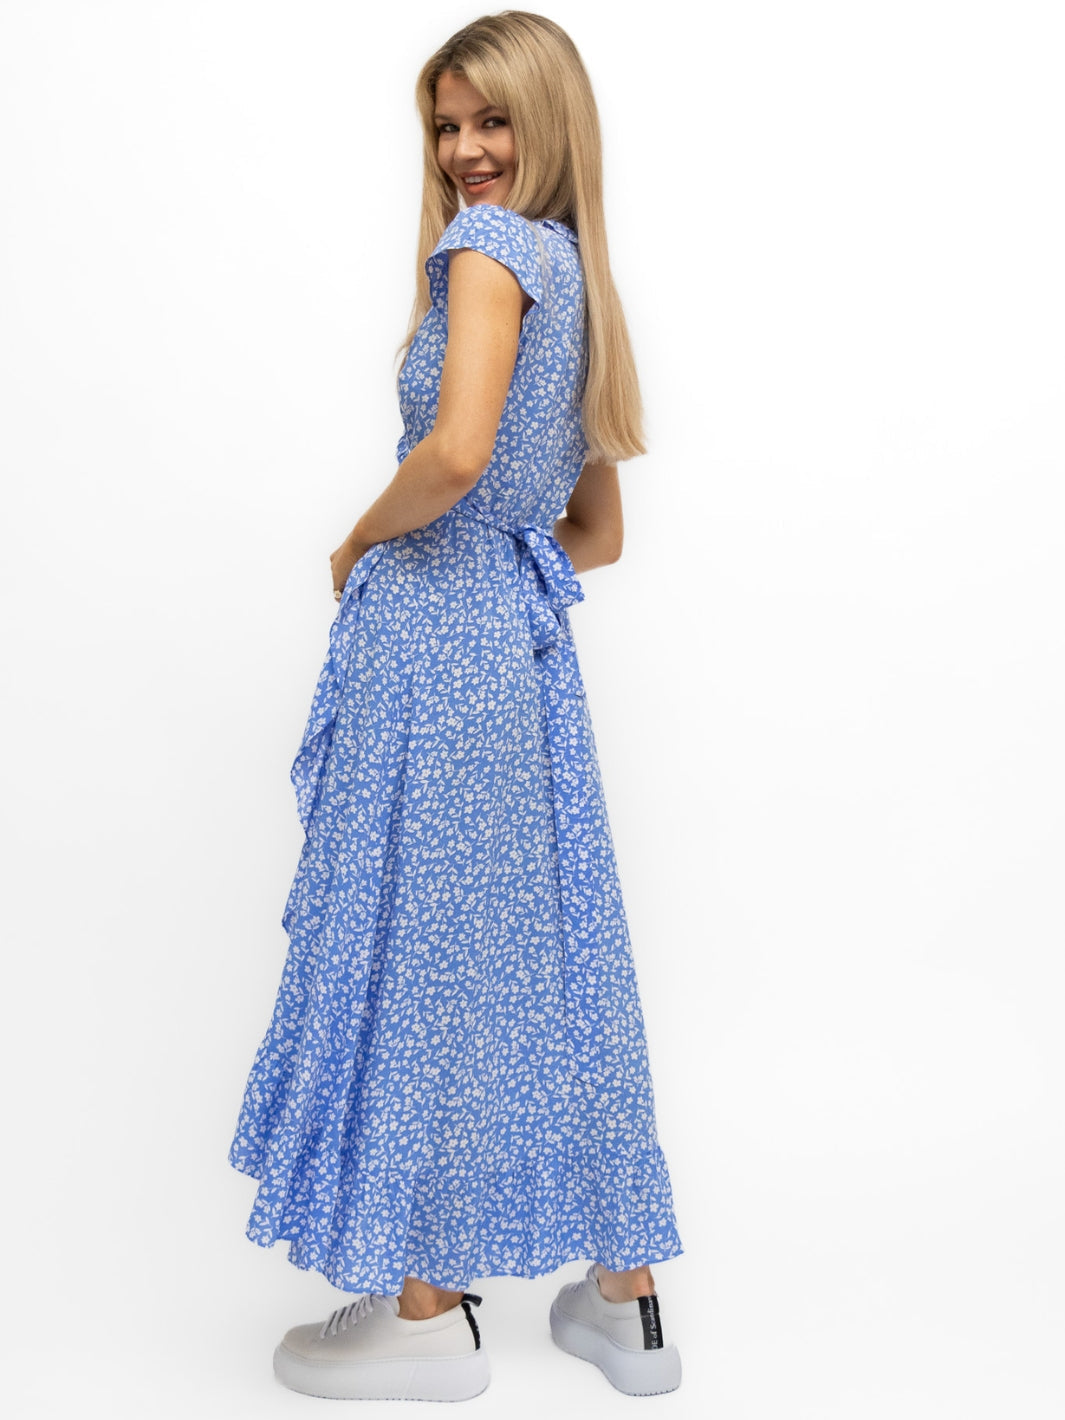 Aspiga London Dress Aspiga London Wrap Dress in Blue Daisy Print